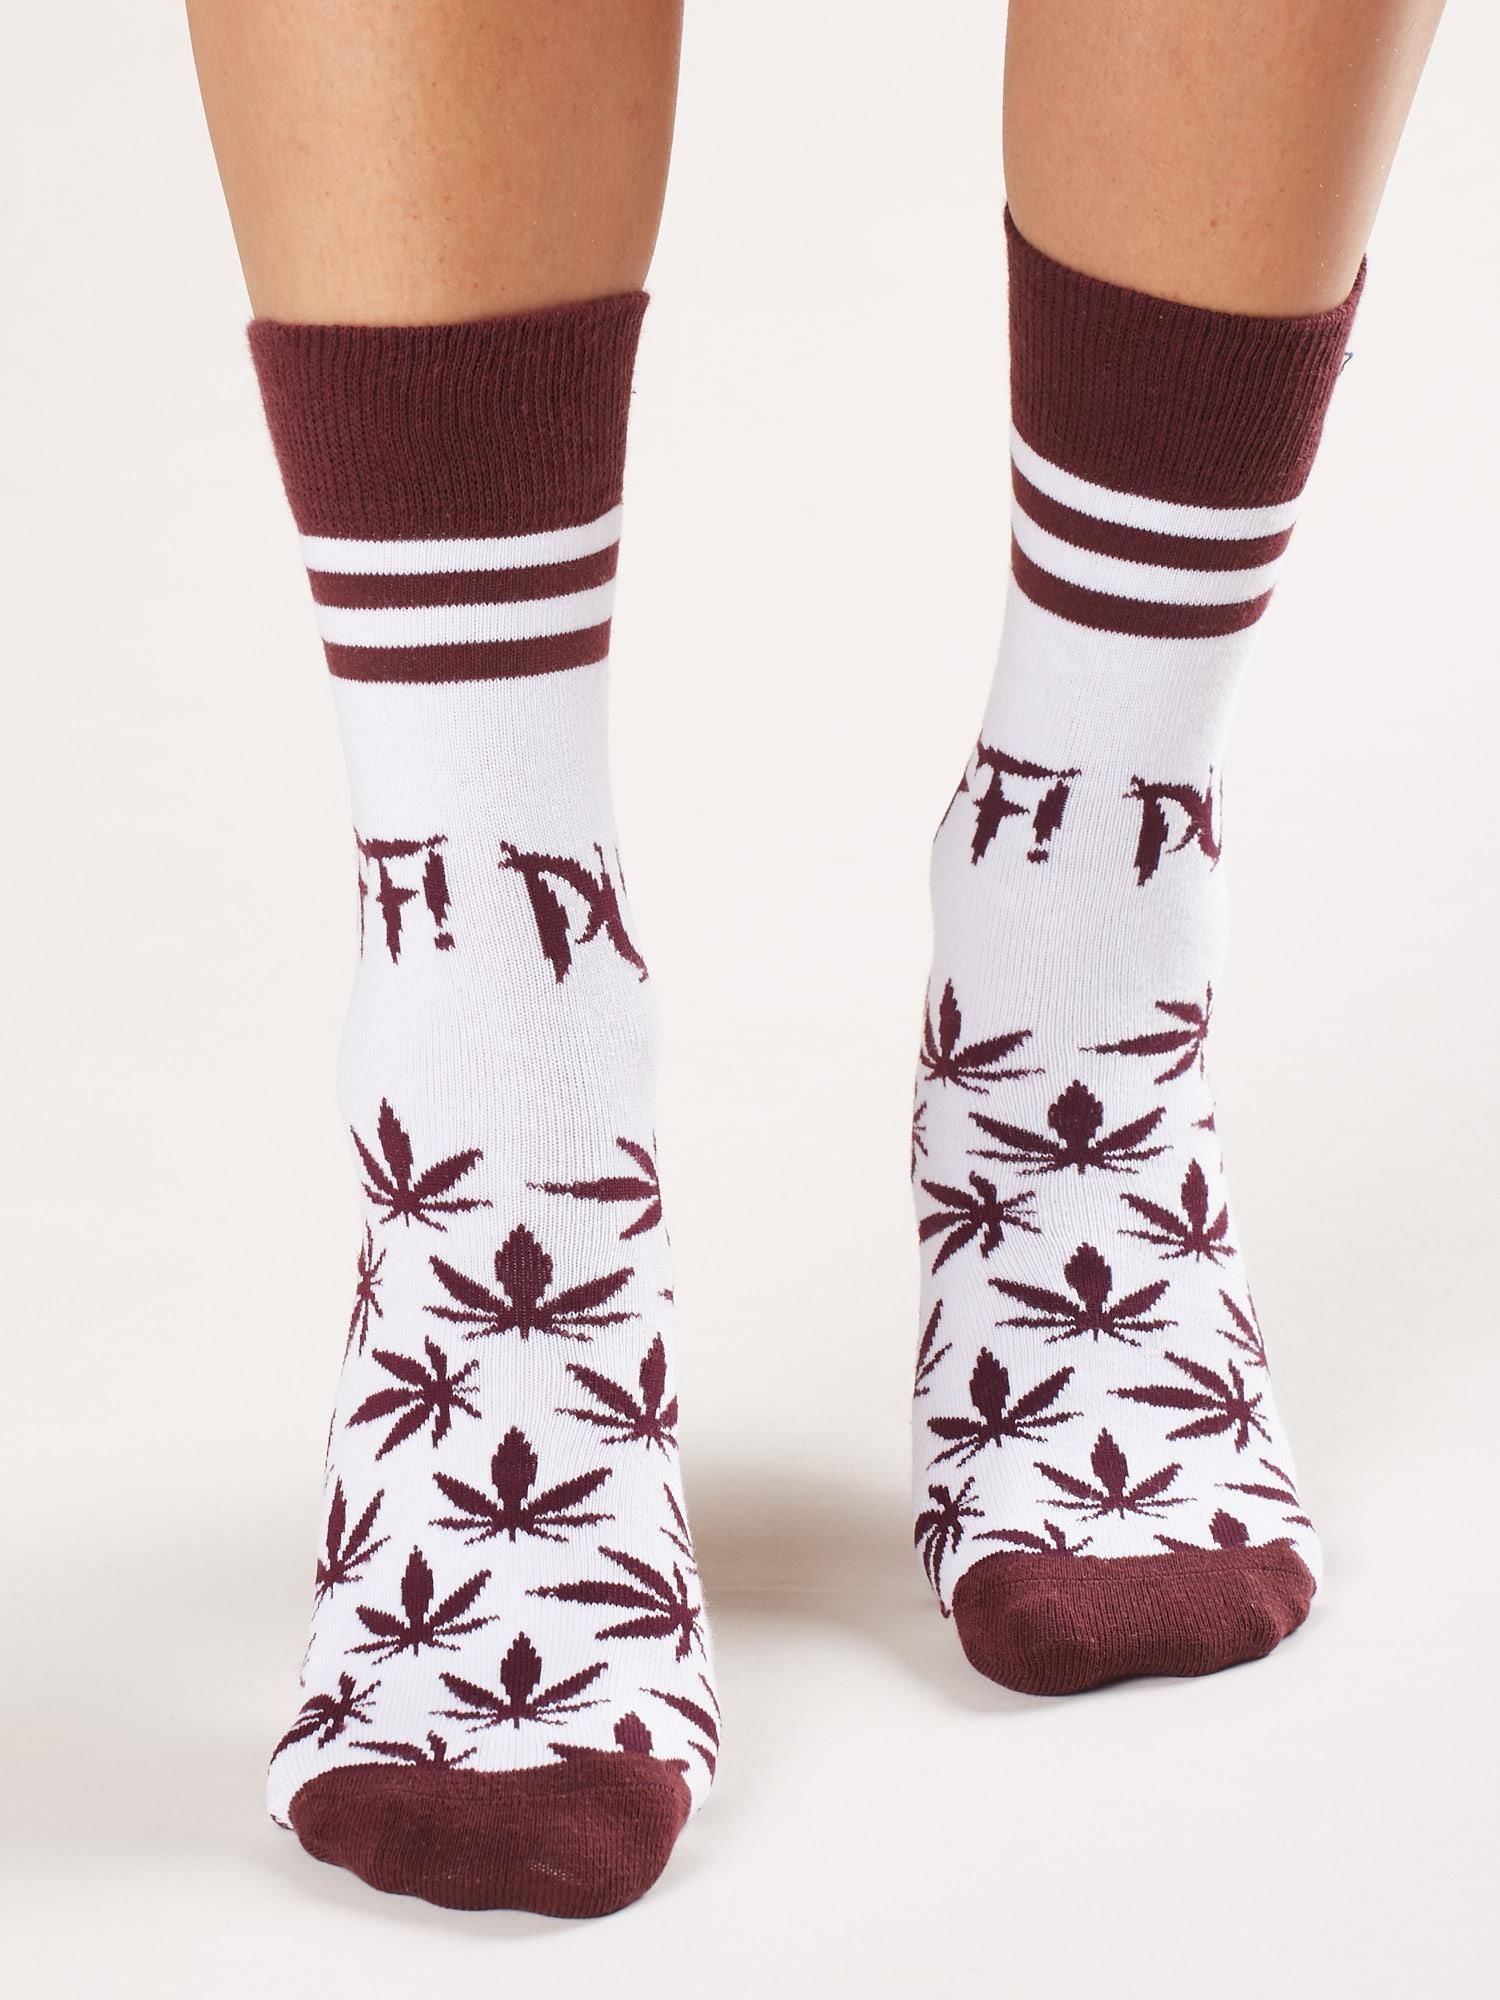 Purpurovo-biele ponožky so vzorom